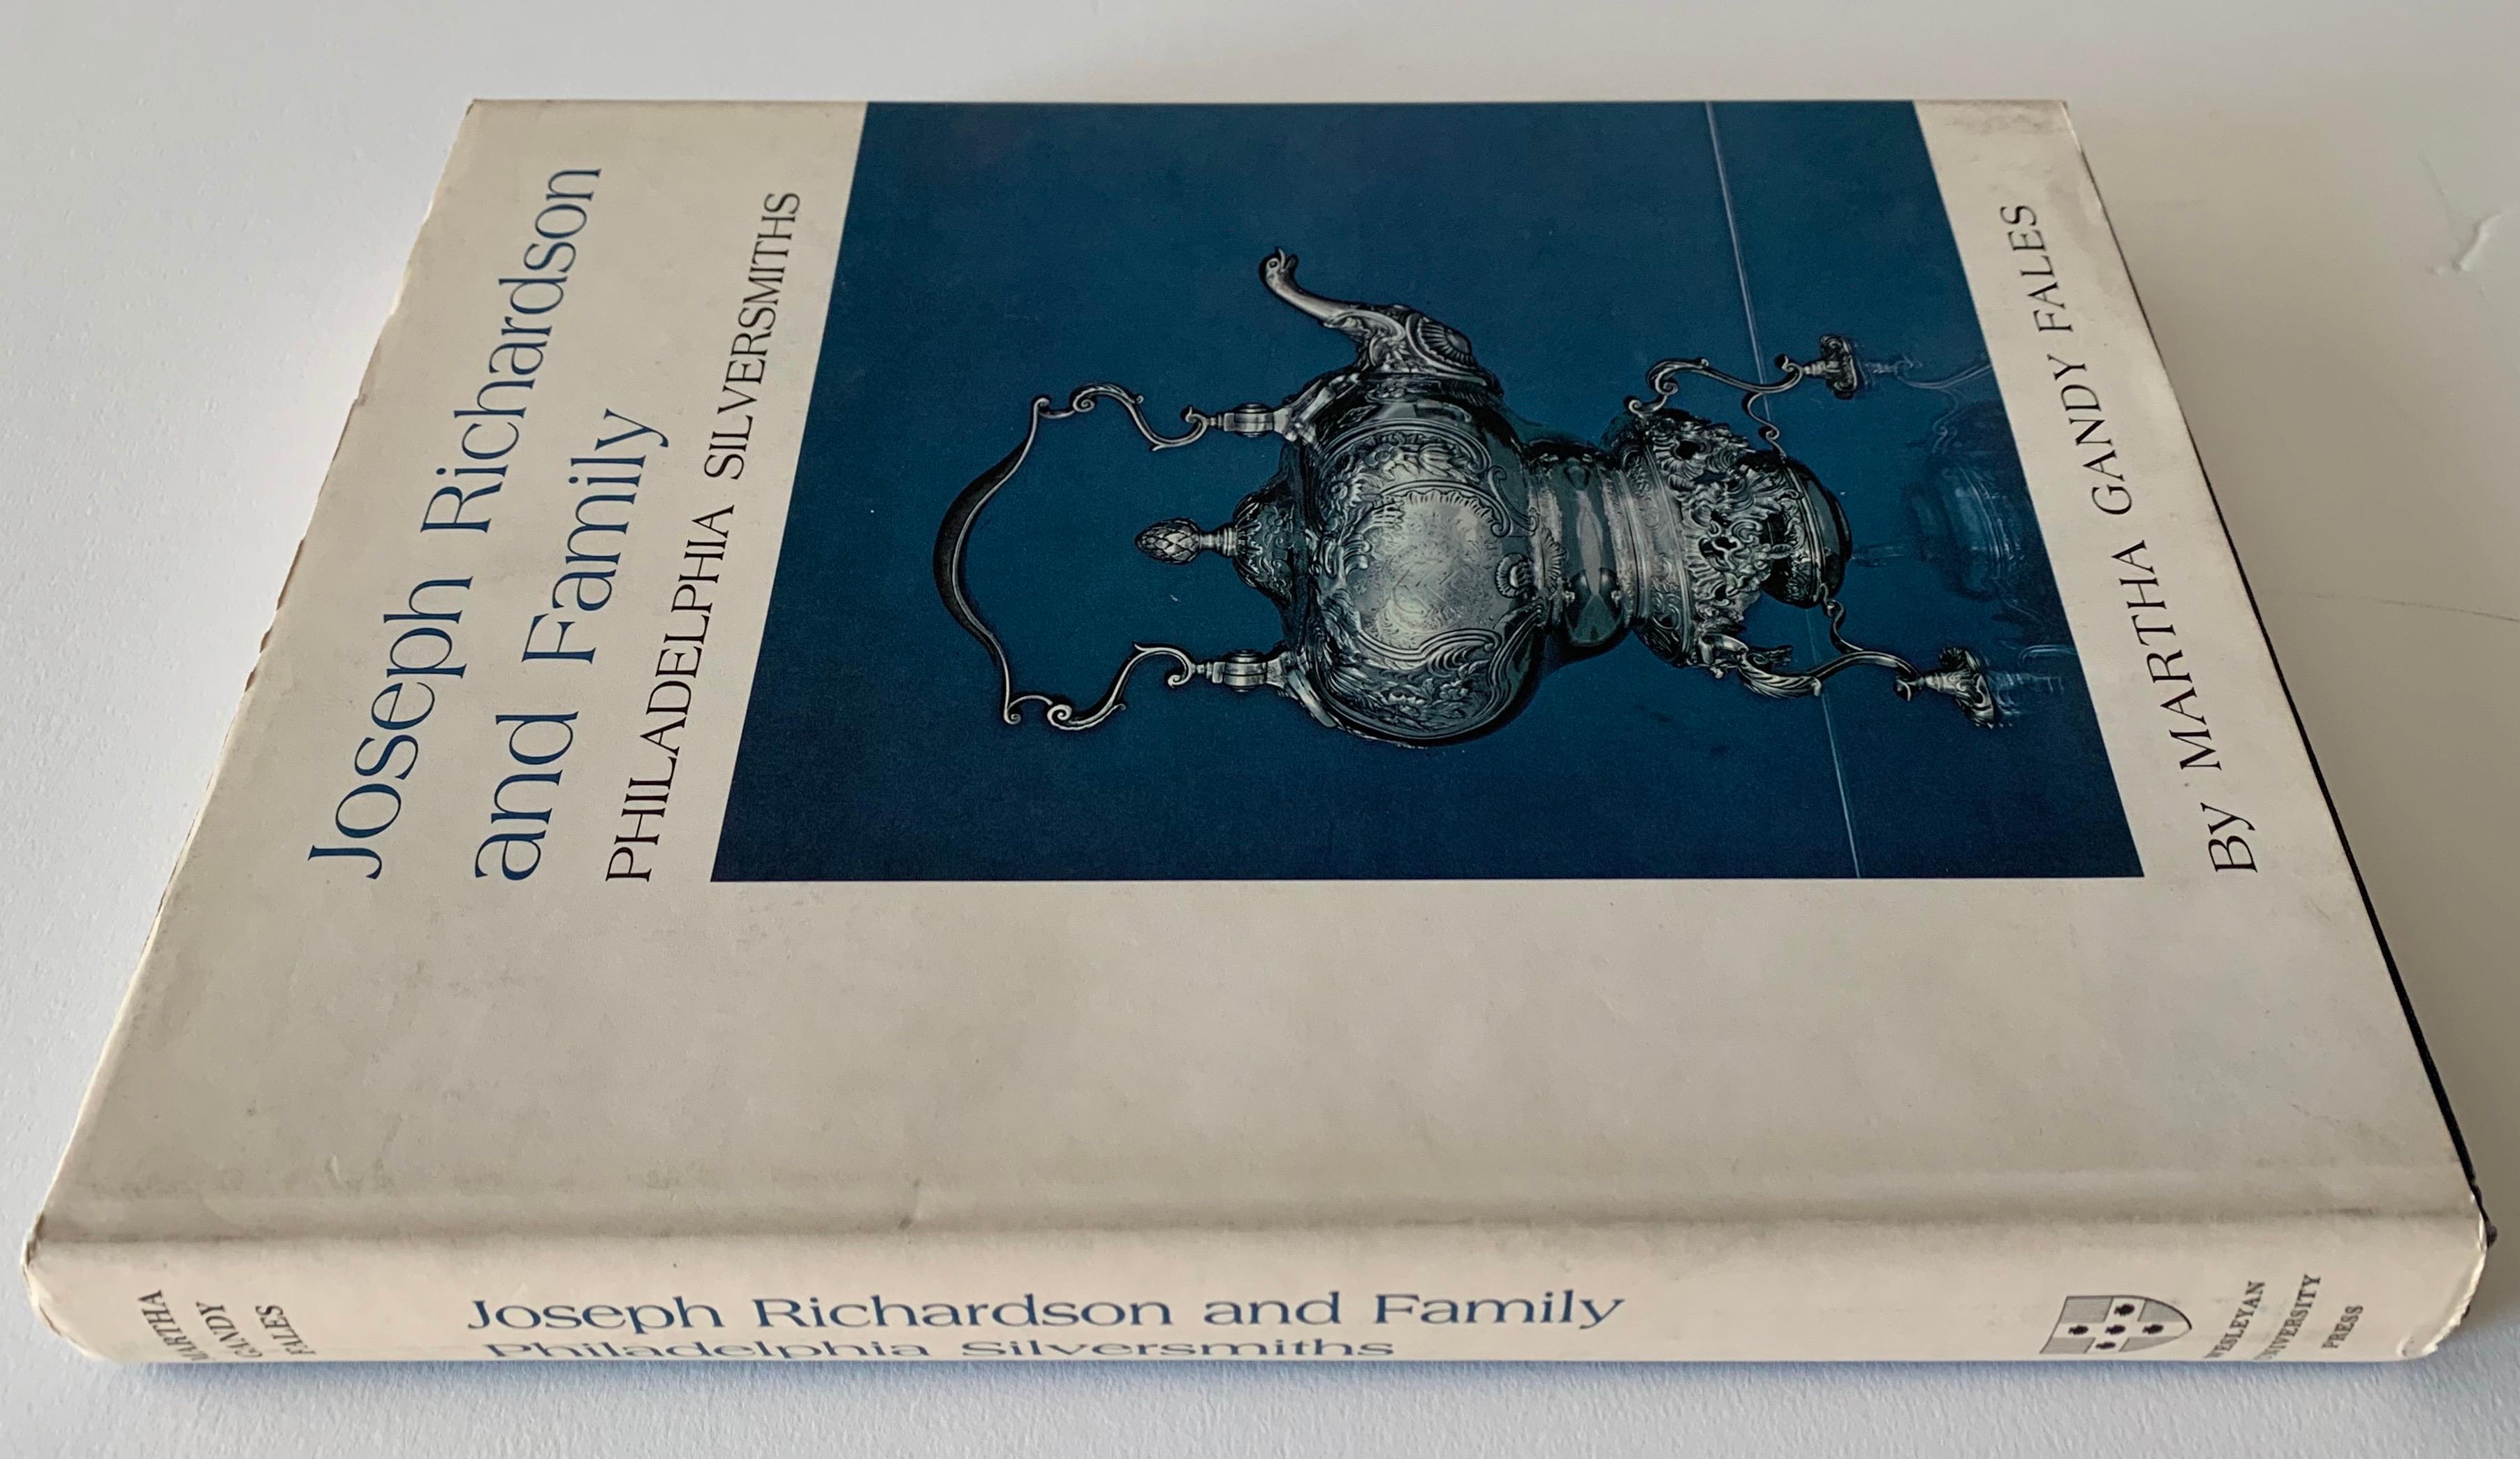 Première édition Joseph Richardson and Family Philadelphia Silversmiths par Martha Ganda Fales. Première édition reliée, 1974.
Très bon état général avec une usure minimale de la jaquette et une reliure serrée.